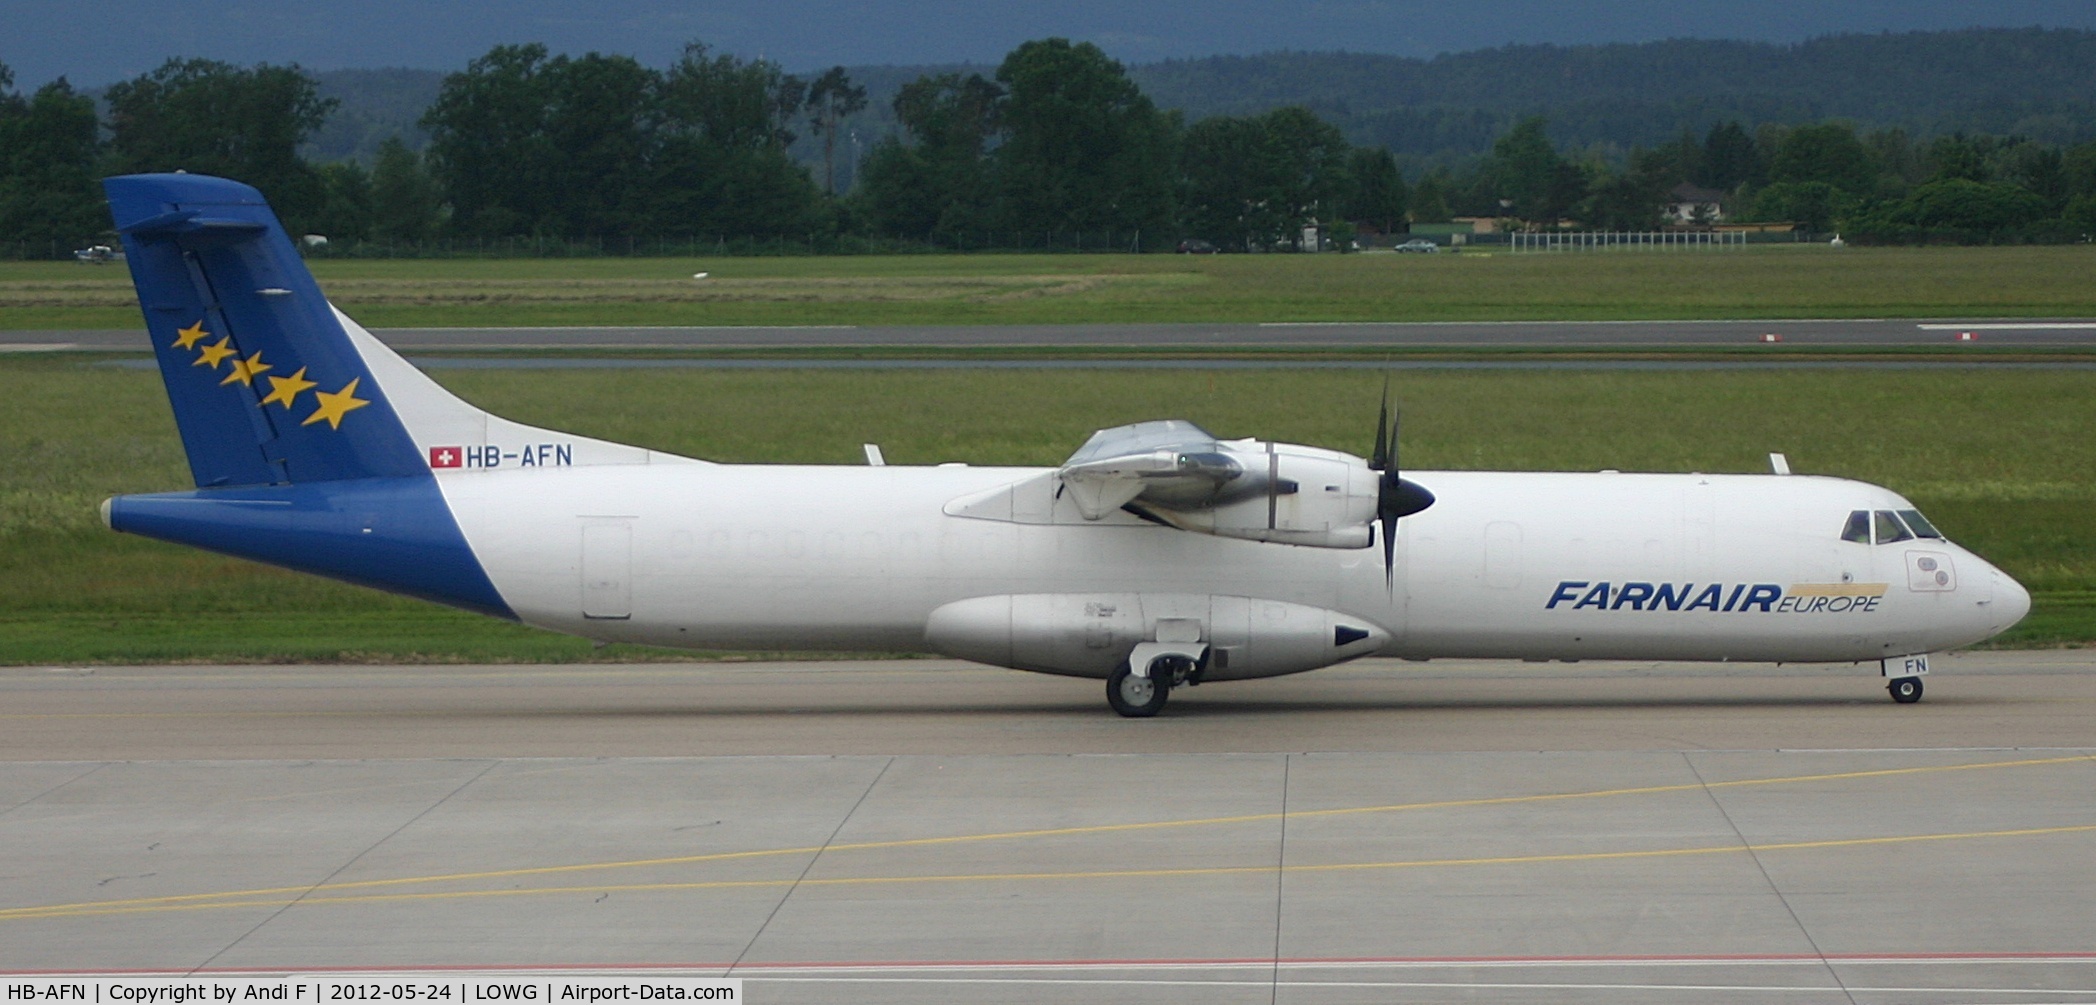 HB-AFN, 1994 ATR 72-201 C/N 389, Farnair Europe Aerospatiale ATR-72